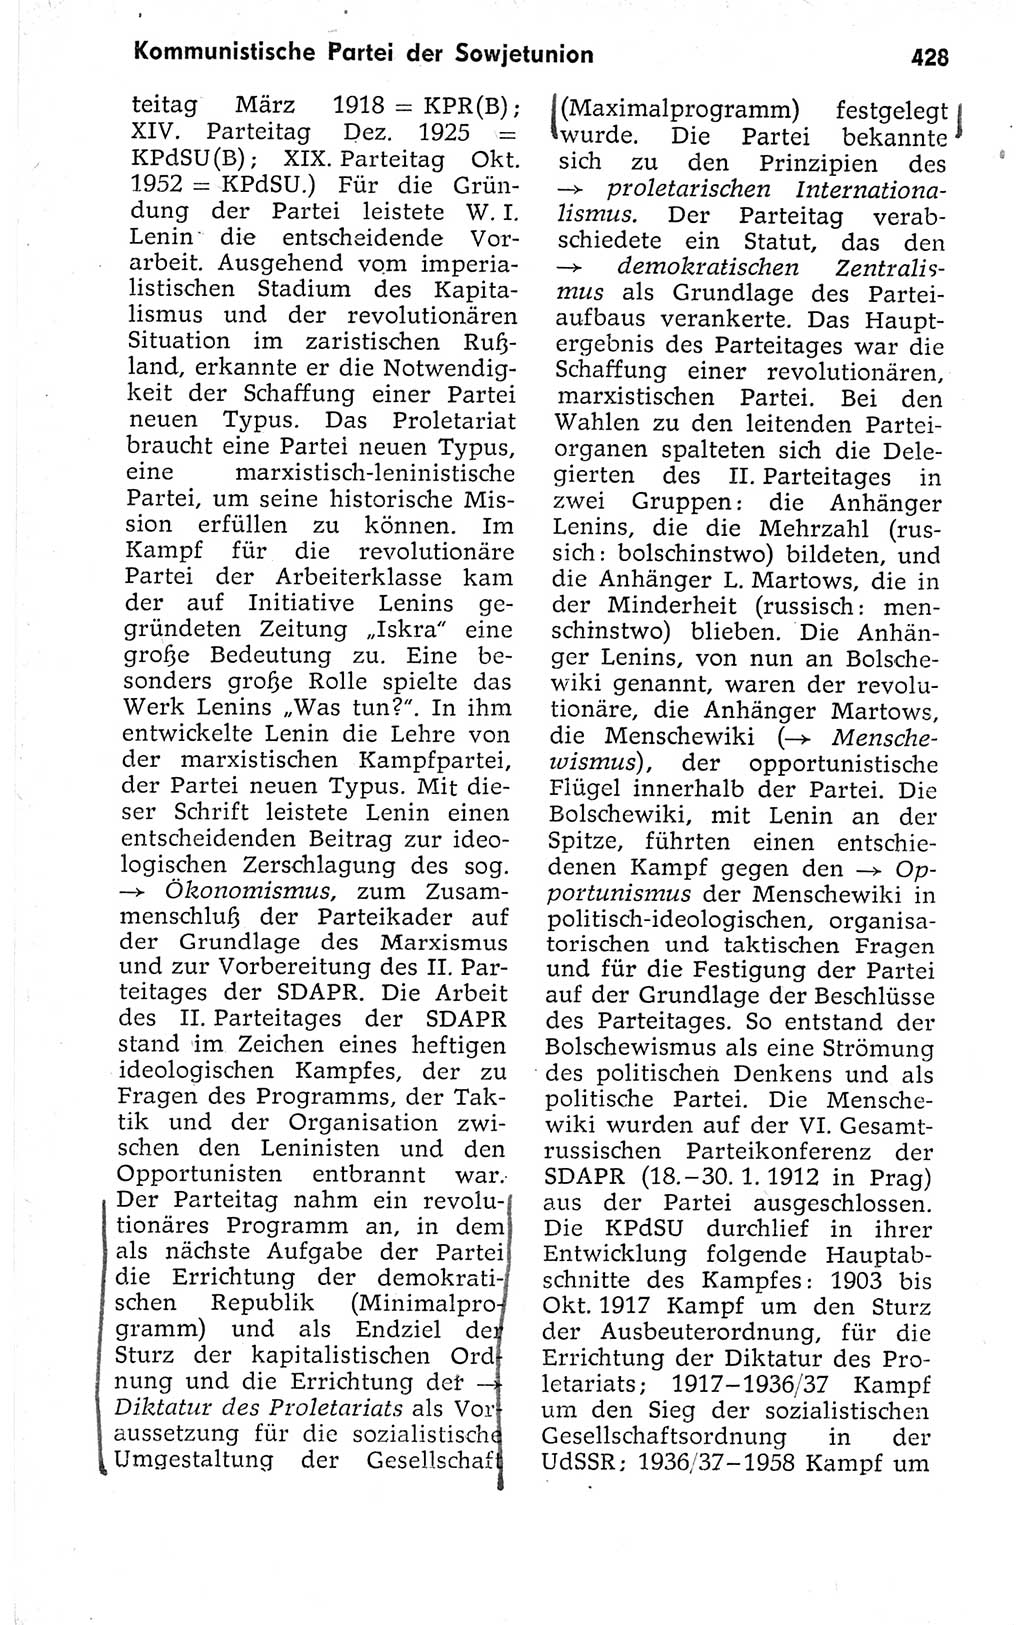 Kleines politisches Wörterbuch [Deutsche Demokratische Republik (DDR)] 1973, Seite 428 (Kl. pol. Wb. DDR 1973, S. 428)